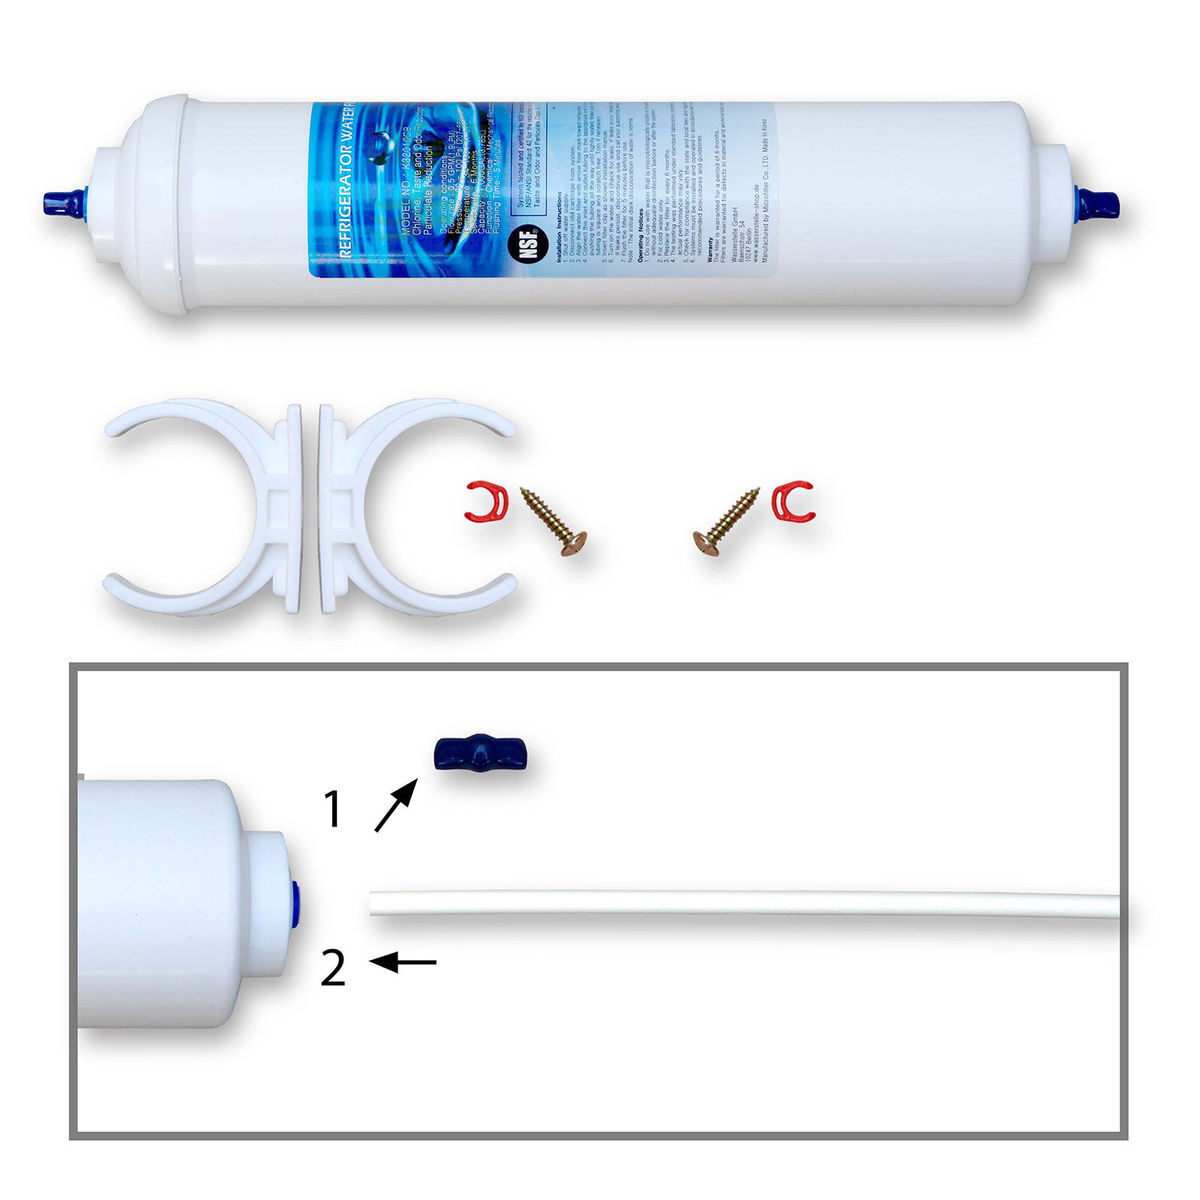 2X Samsung DA29-10105J HAFEX AquaPure filtre à eau HAF-EX / XAA pour  réfrigérateur